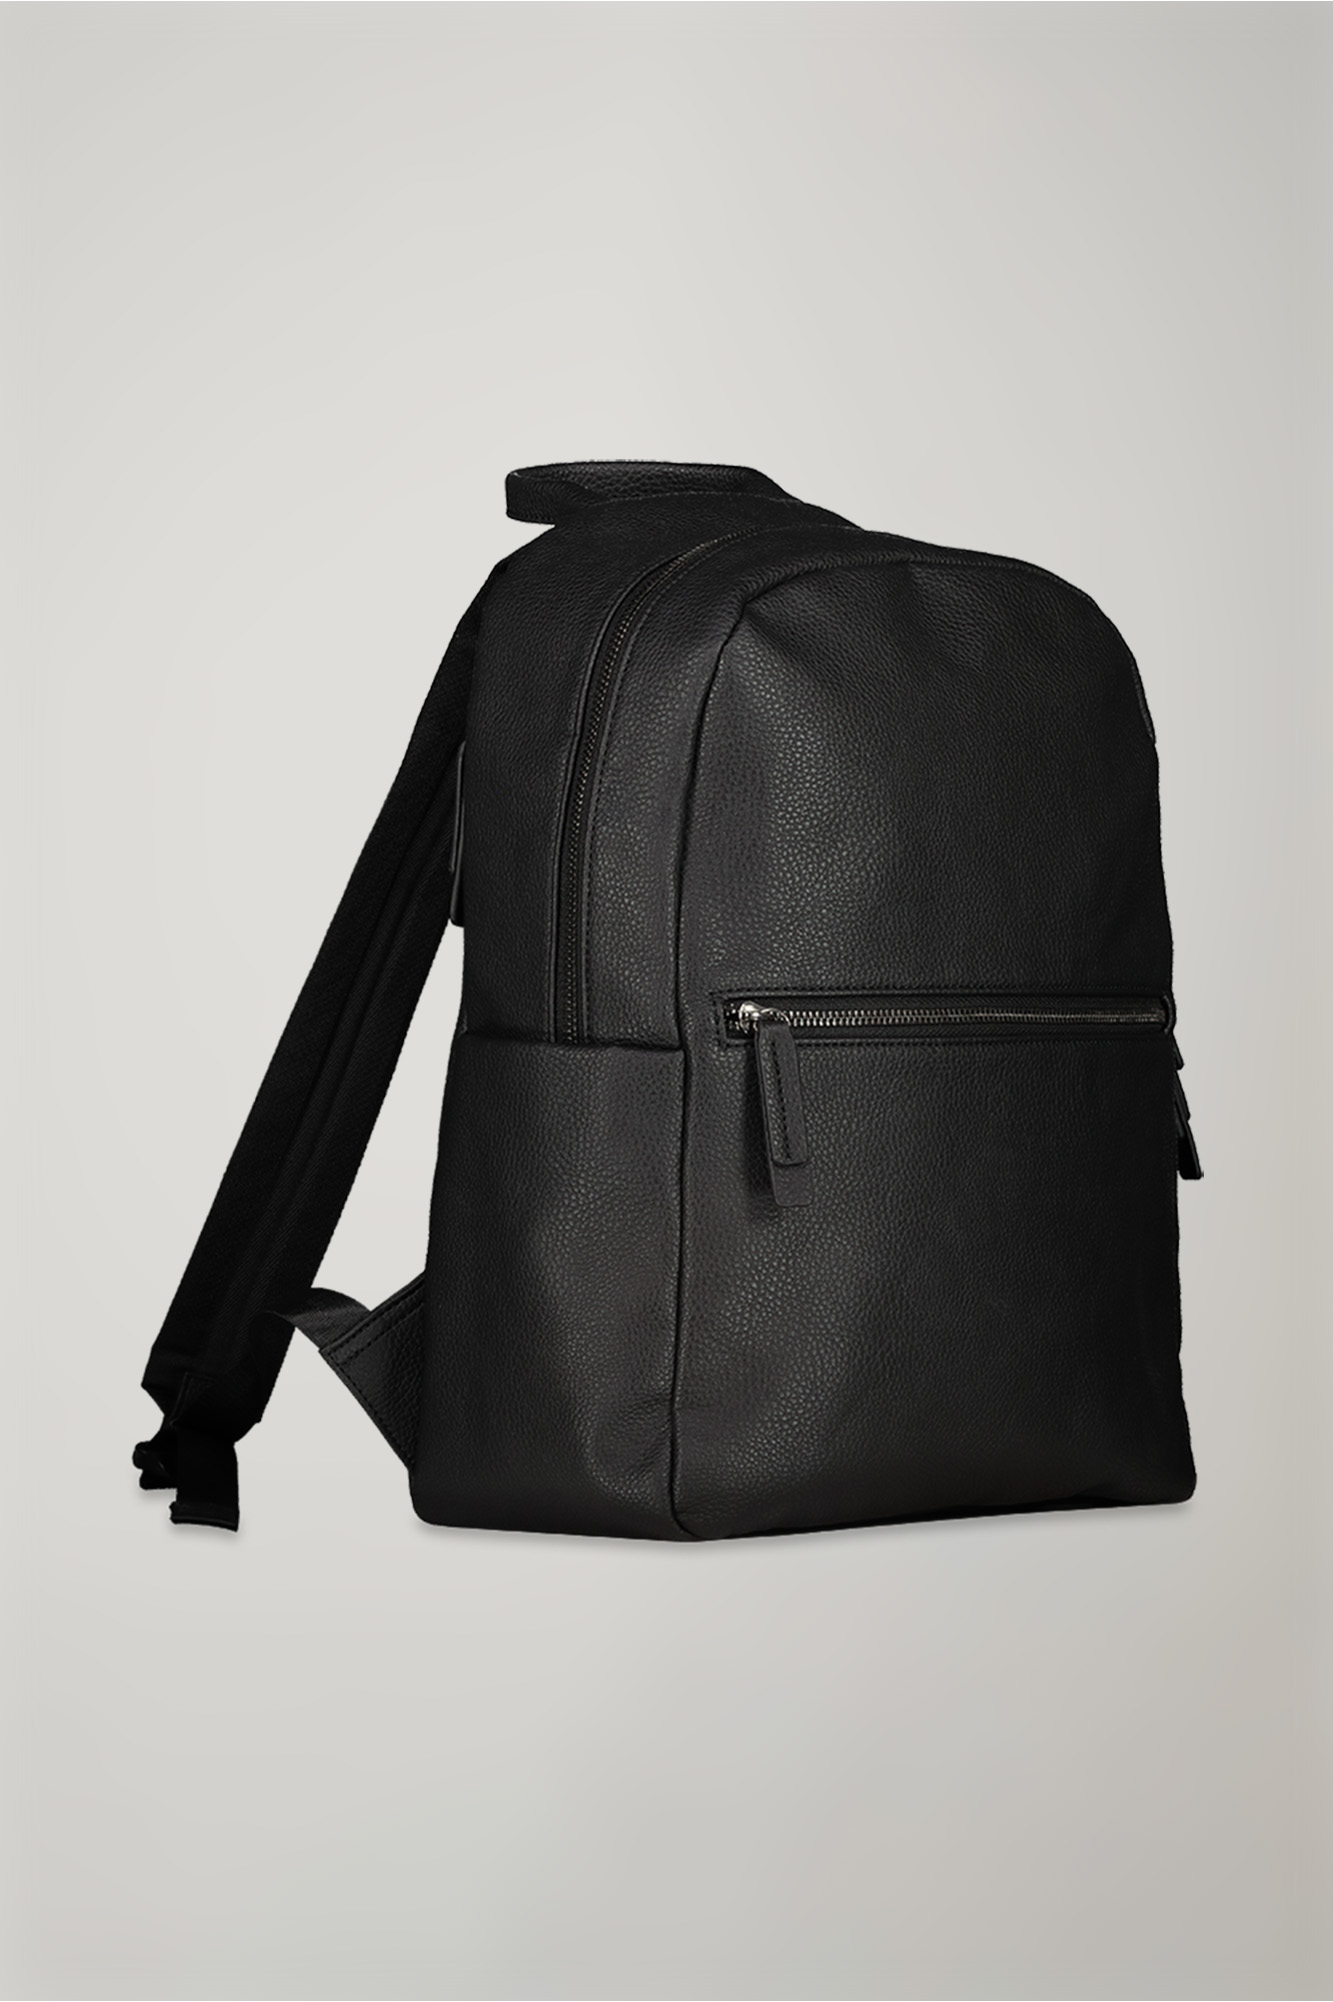 Men's backpack in imitation leather | Doppelganger | Bags Men’s Online